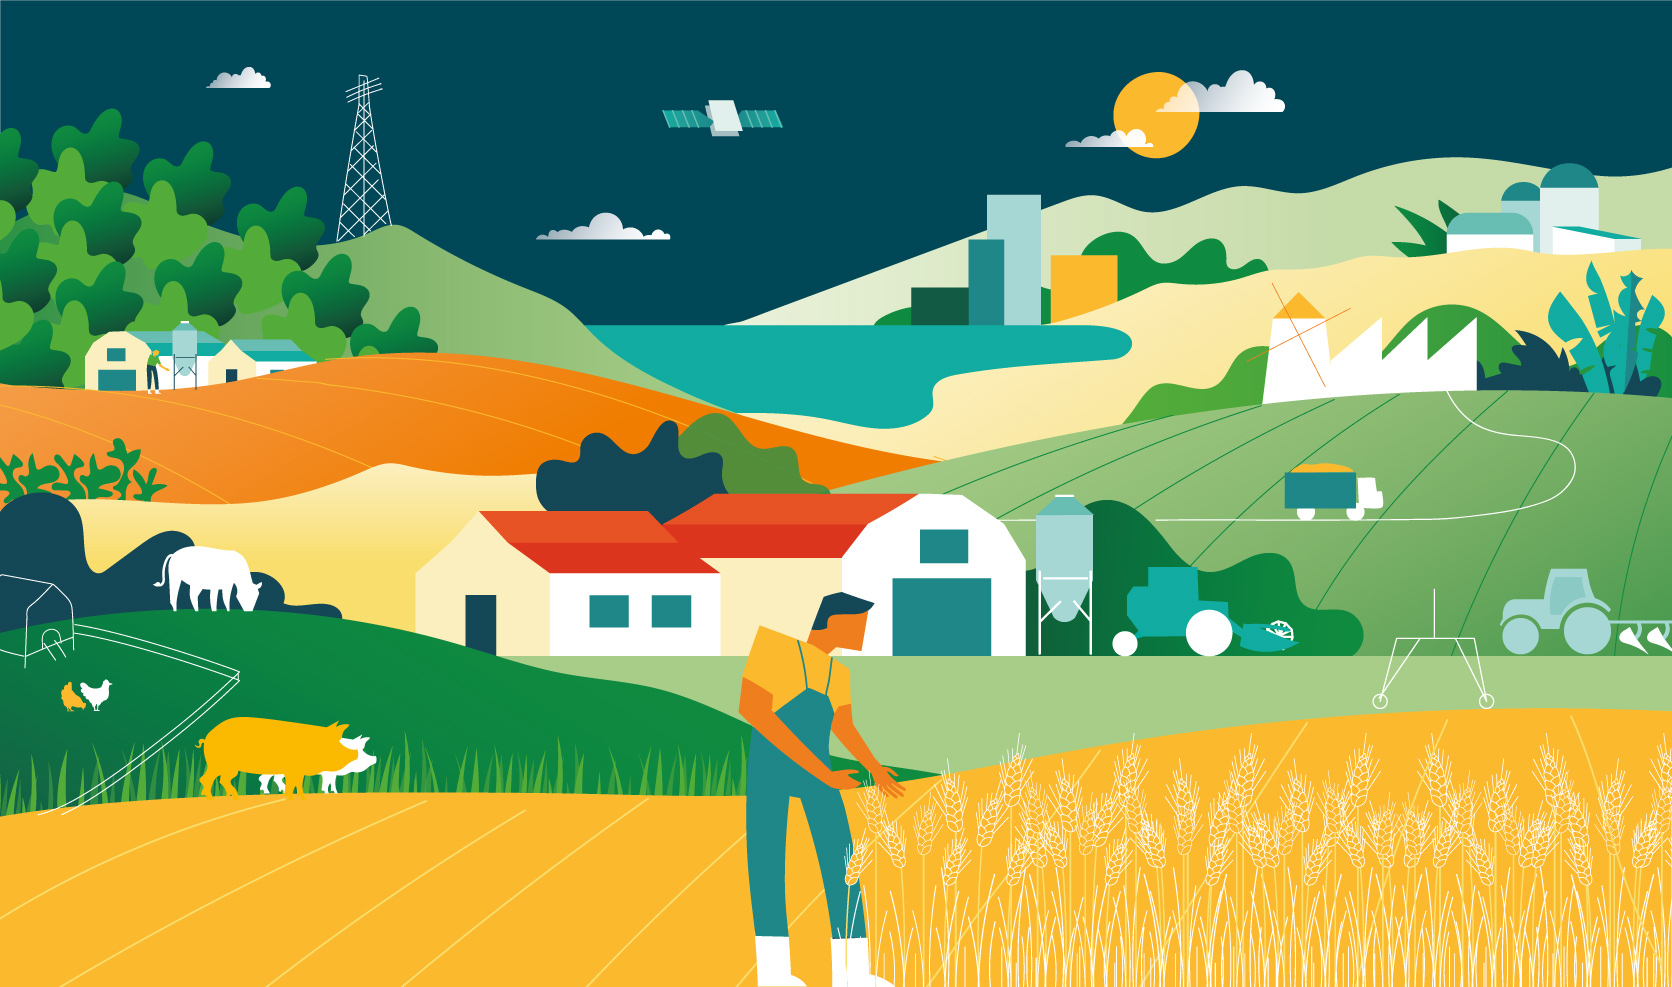 Dekoratives Element: Illustration einer Farmsituation